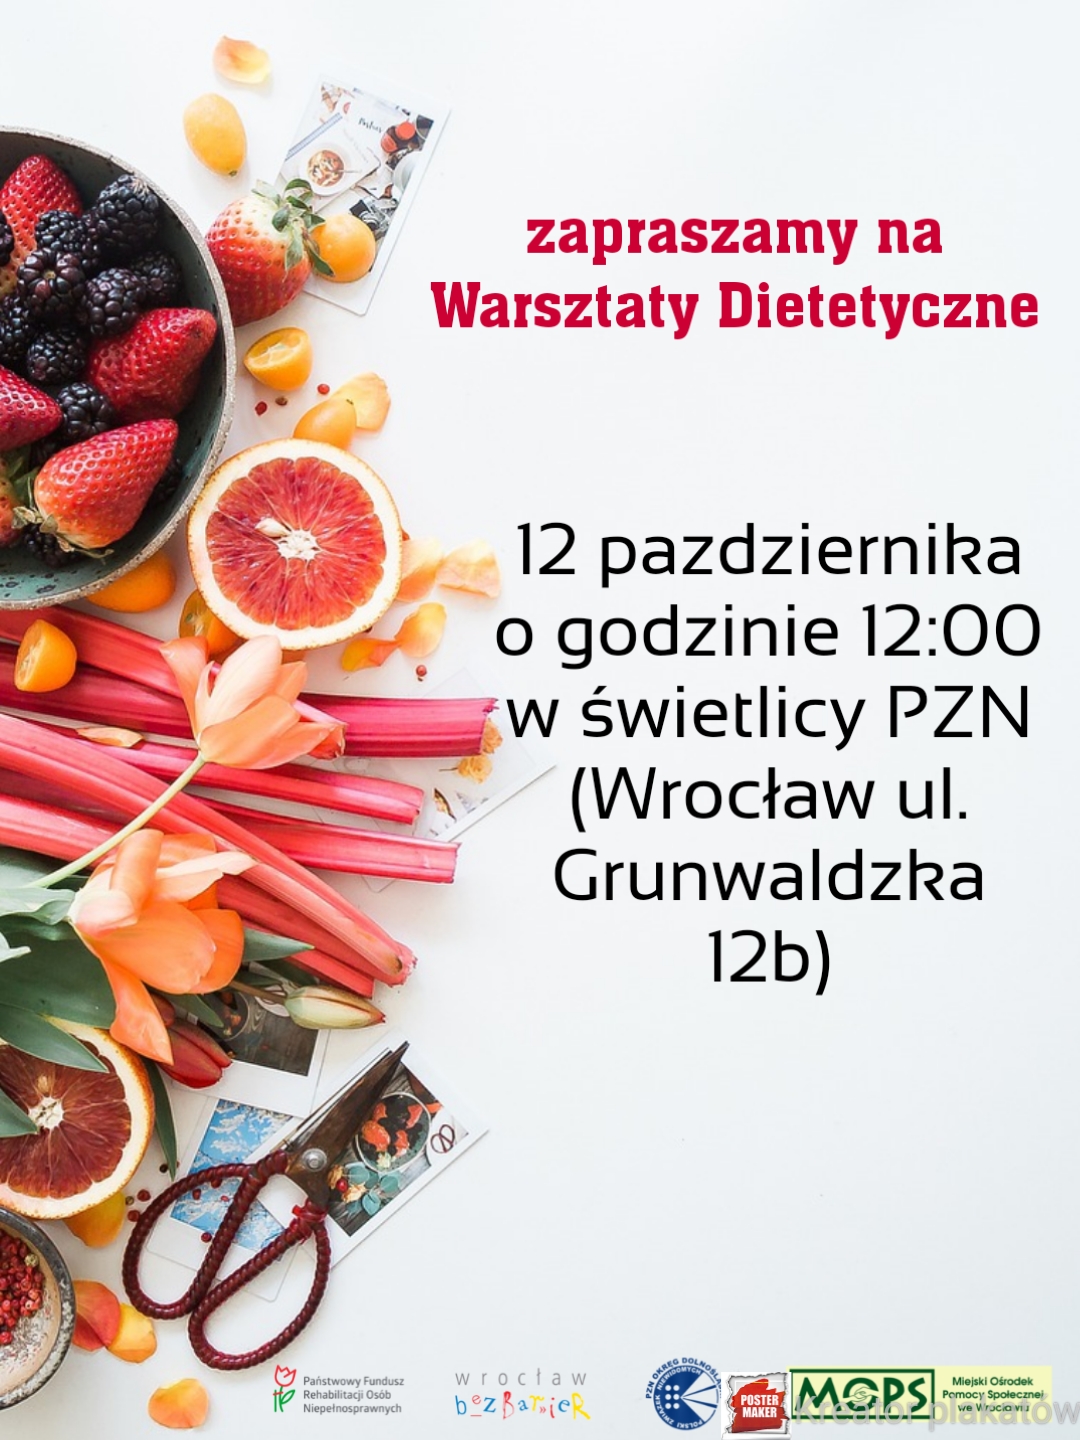 grafika z owocami i warzywami, zawiera treść ogłoszenia, oraz loga: PZN-u, PFRON-u, Wrocław bez barier, oraz MOPSu